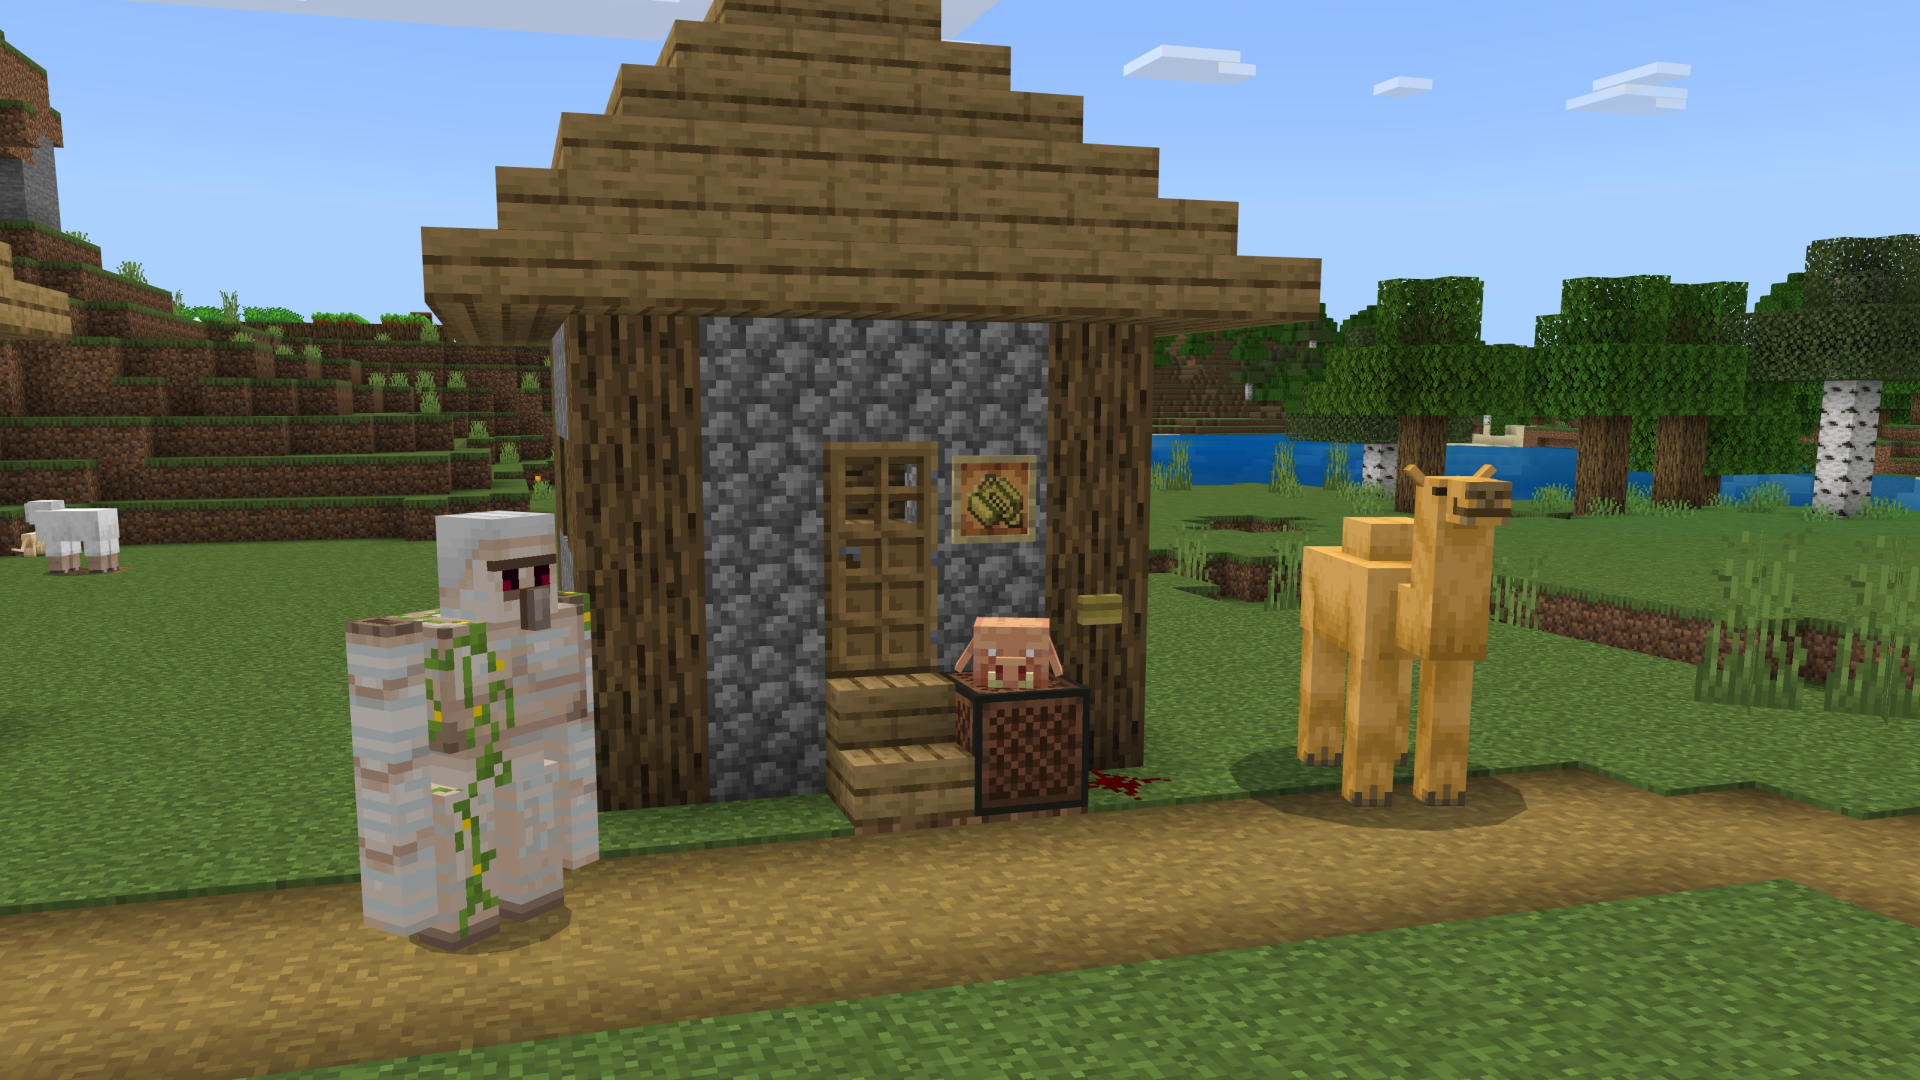 A Minecraft screenshot of a village with an iron golem, a camel, and a piglin head on a noteblock.